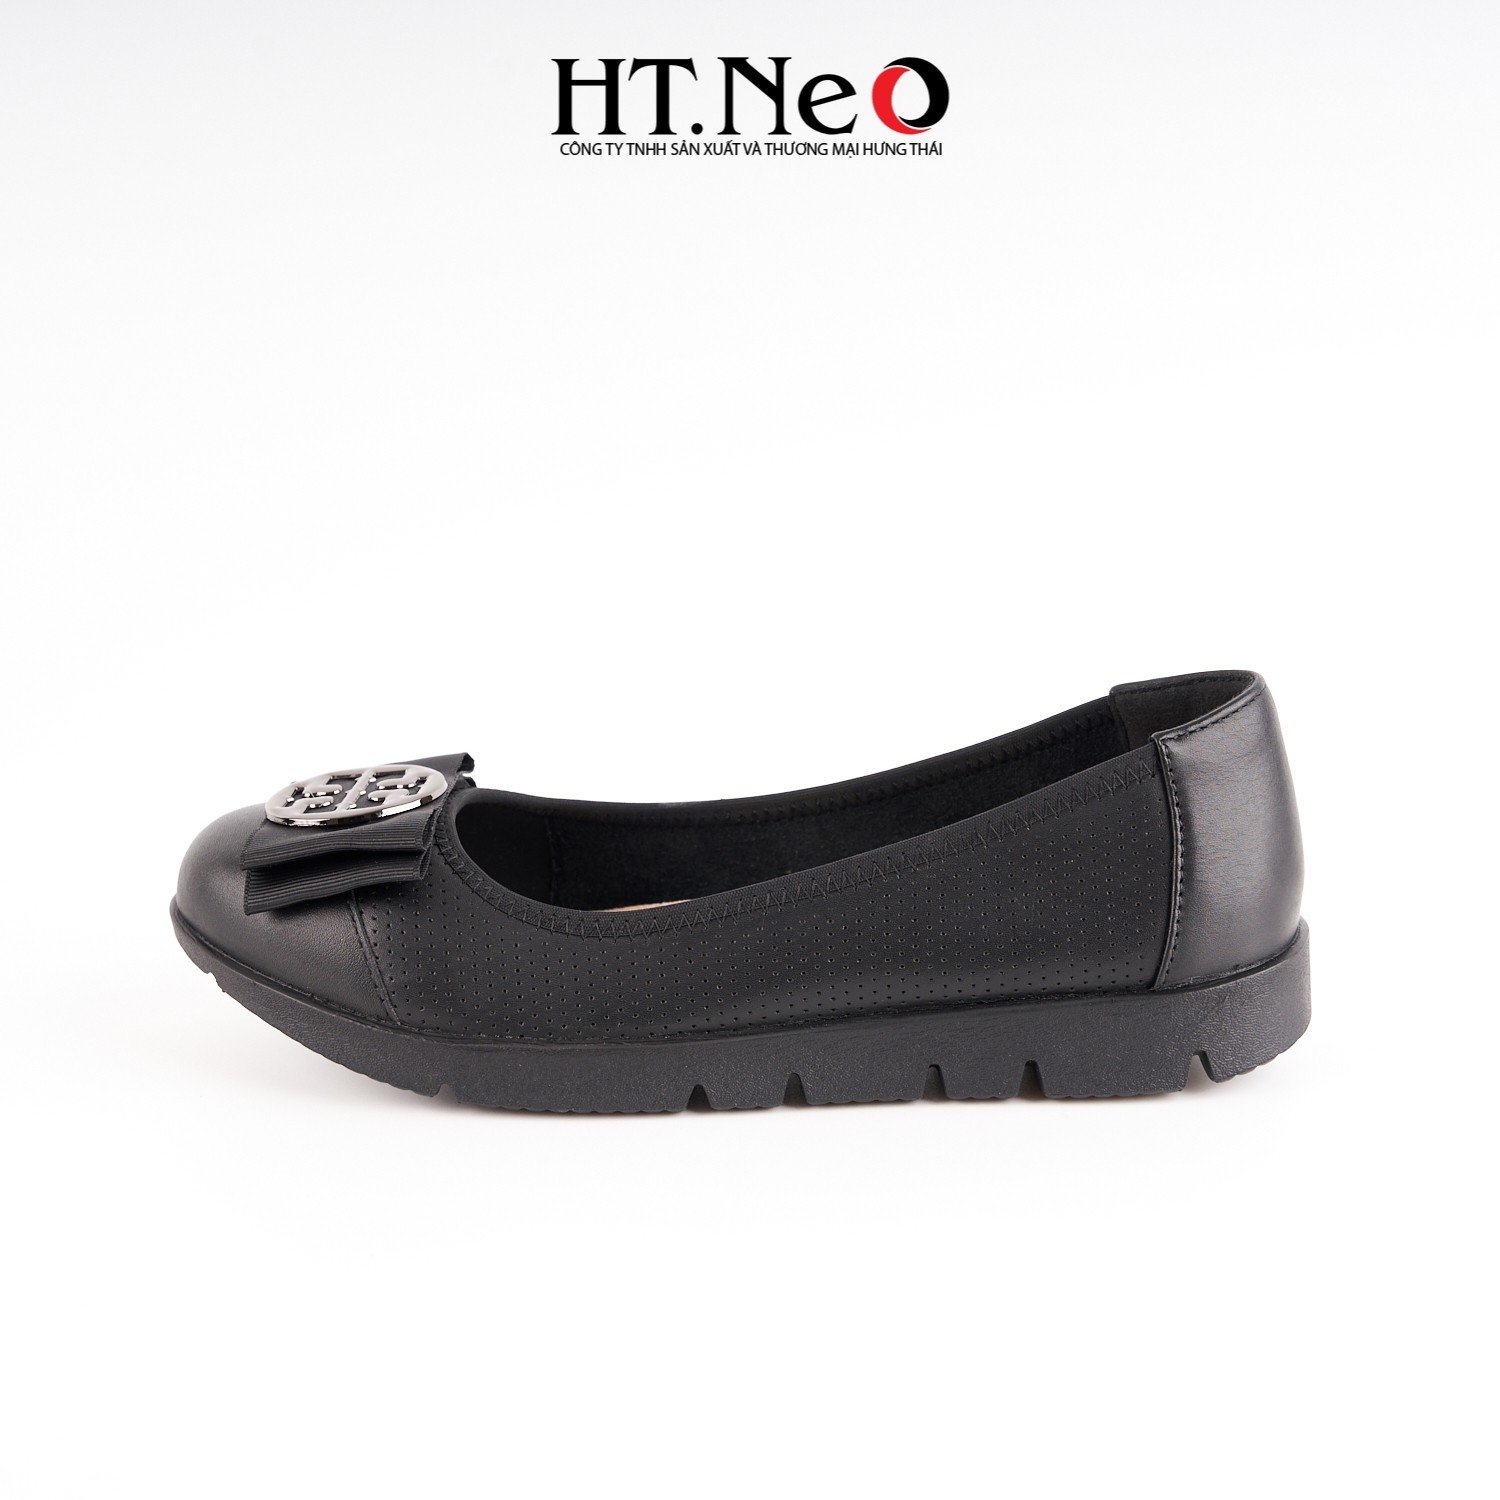 Giày bệt nữ được thiết kế đơn giản với kiểu dáng đơn giản, trẻ trung, khuy tròn, chất liệu da đế cao su NU119